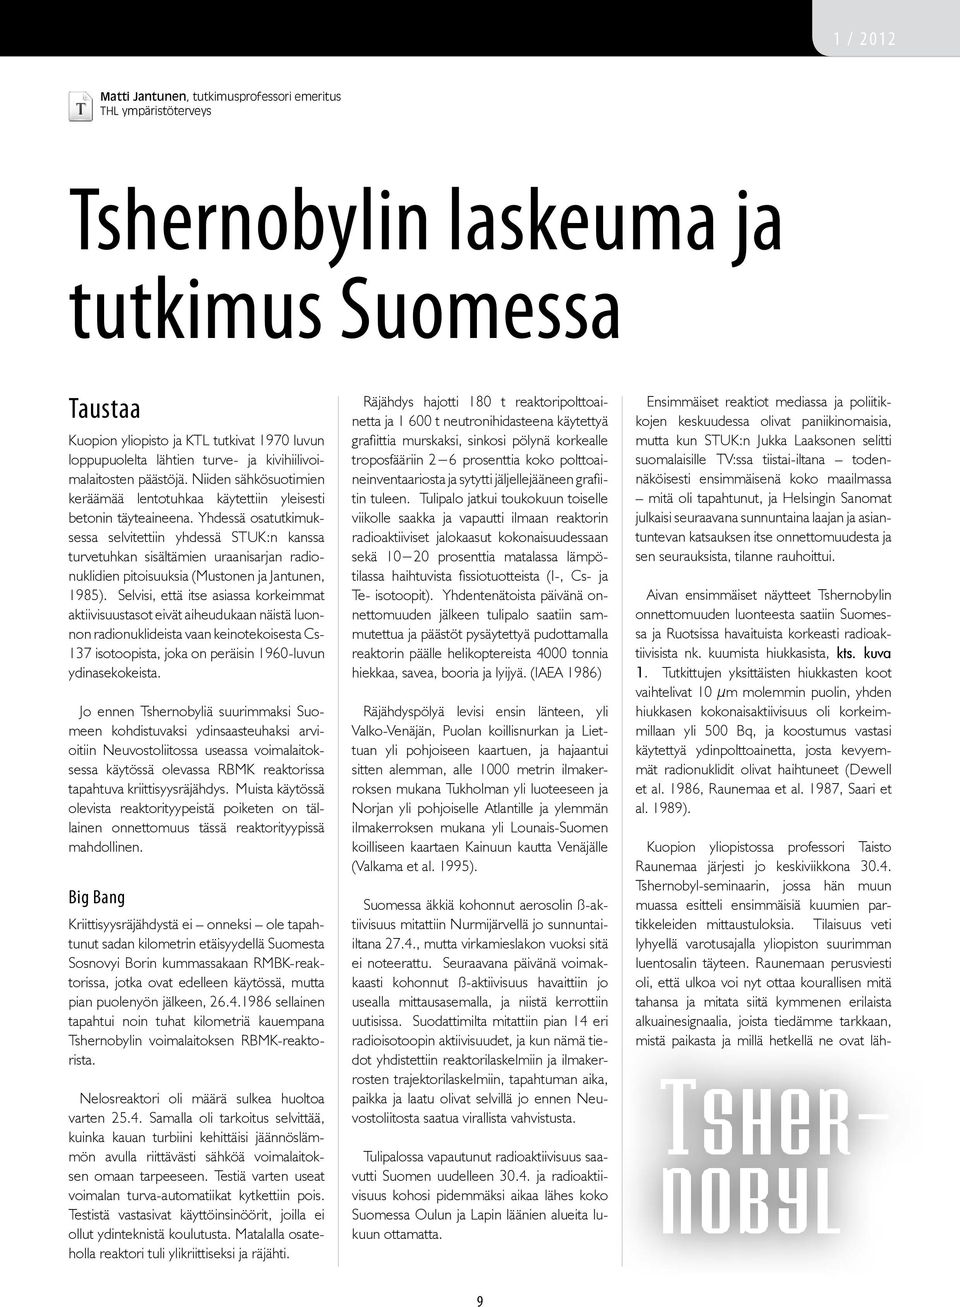 Yhdessä osatutkimuksessa selvitettiin yhdessä STUK:n kanssa turvetuhkan sisältämien uraanisarjan radionuklidien pitoisuuksia (Mustonen ja Jantunen, 1985).